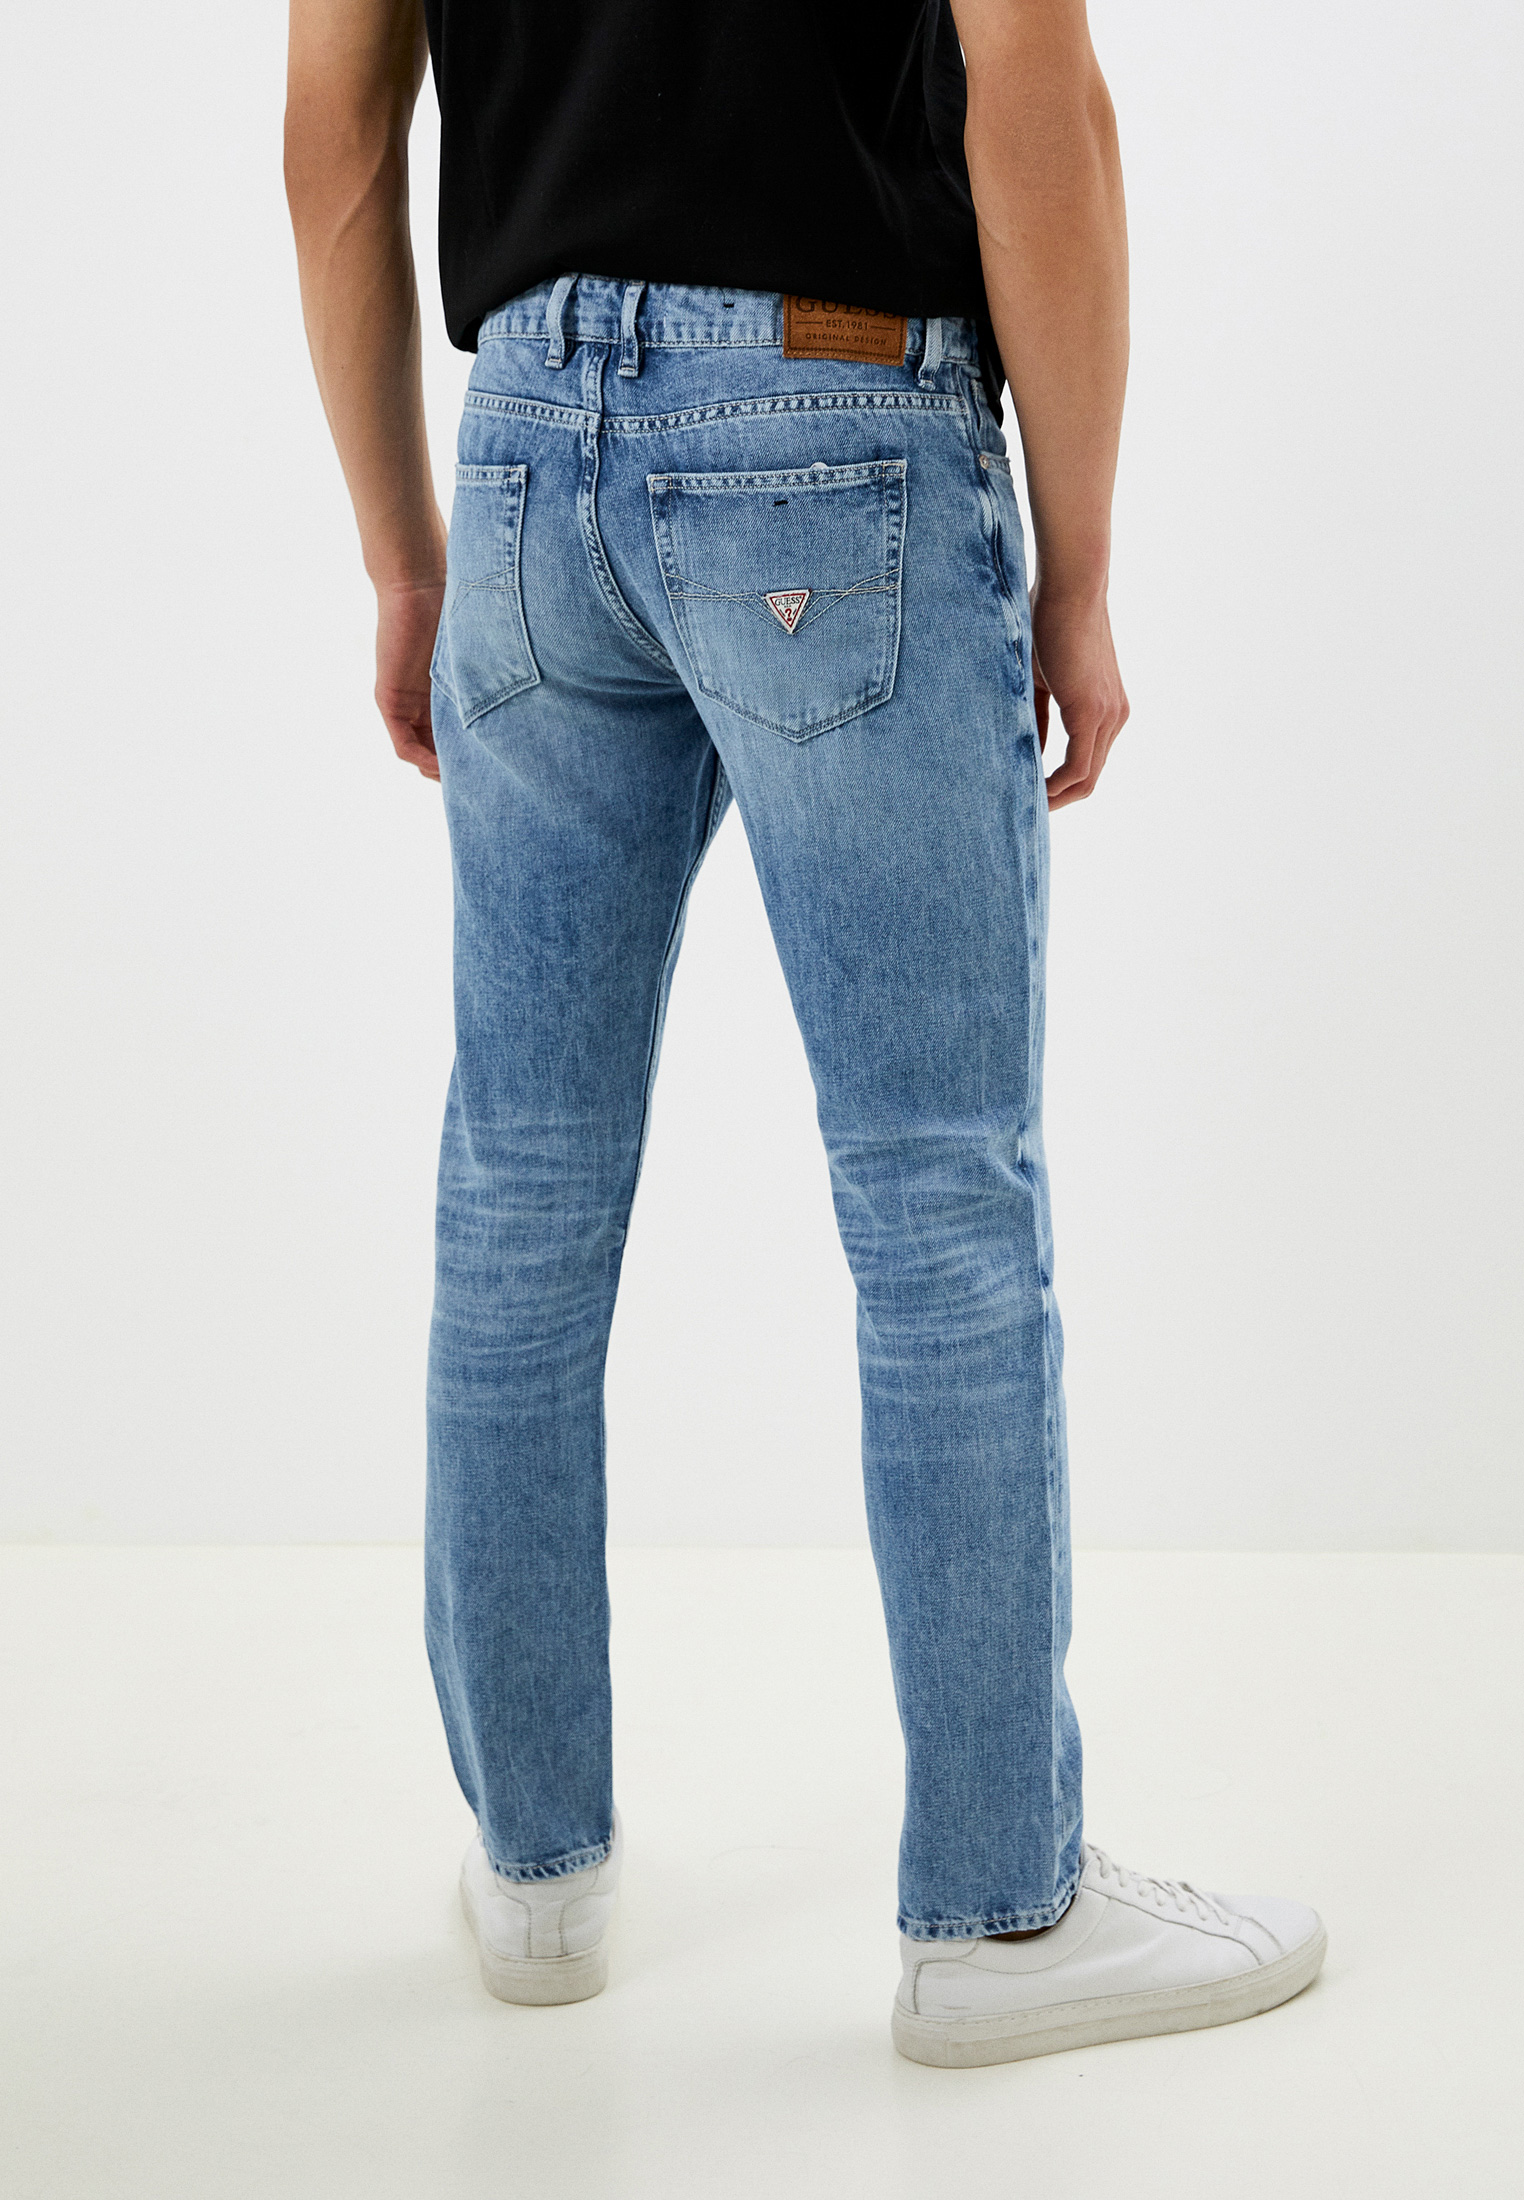 Зауженные джинсы Guess (Гесс) M3GAS2D4Z43: изображение 3